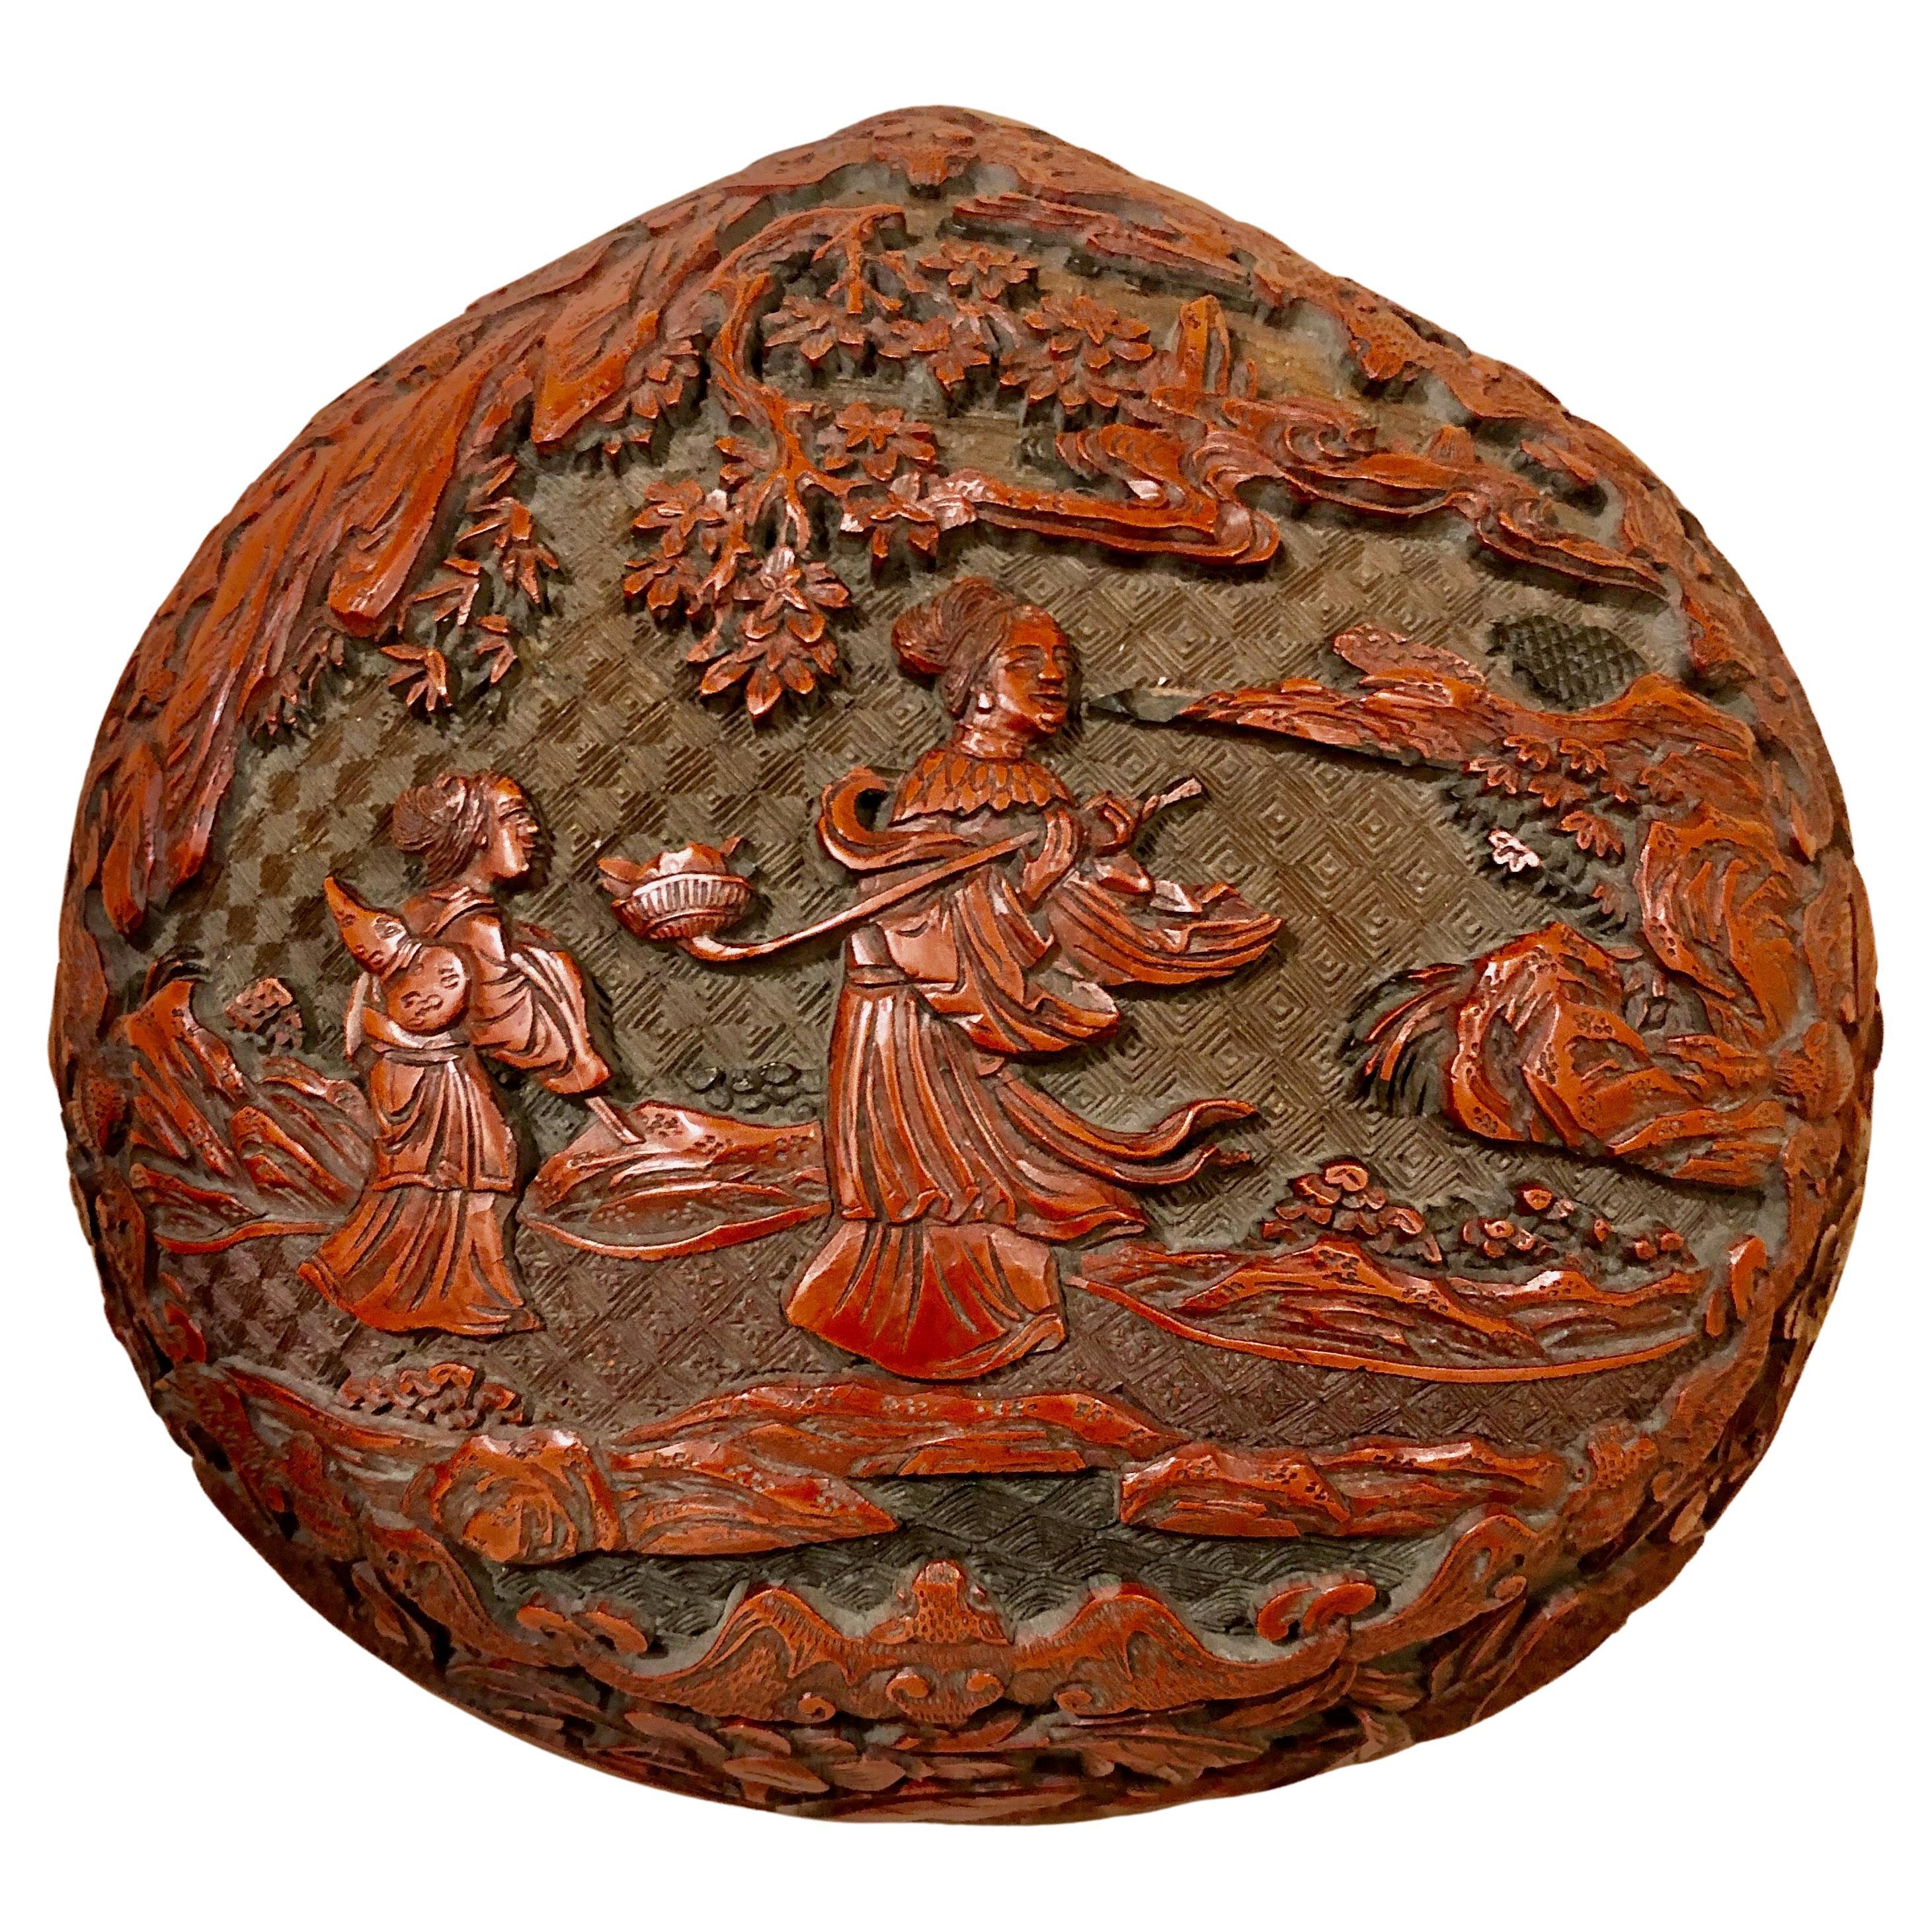 Fein geschnitzte chinesische Cinnabar-Schachtel und Deckel aus dem späten 18. bis frühen 19. Jahrhundert